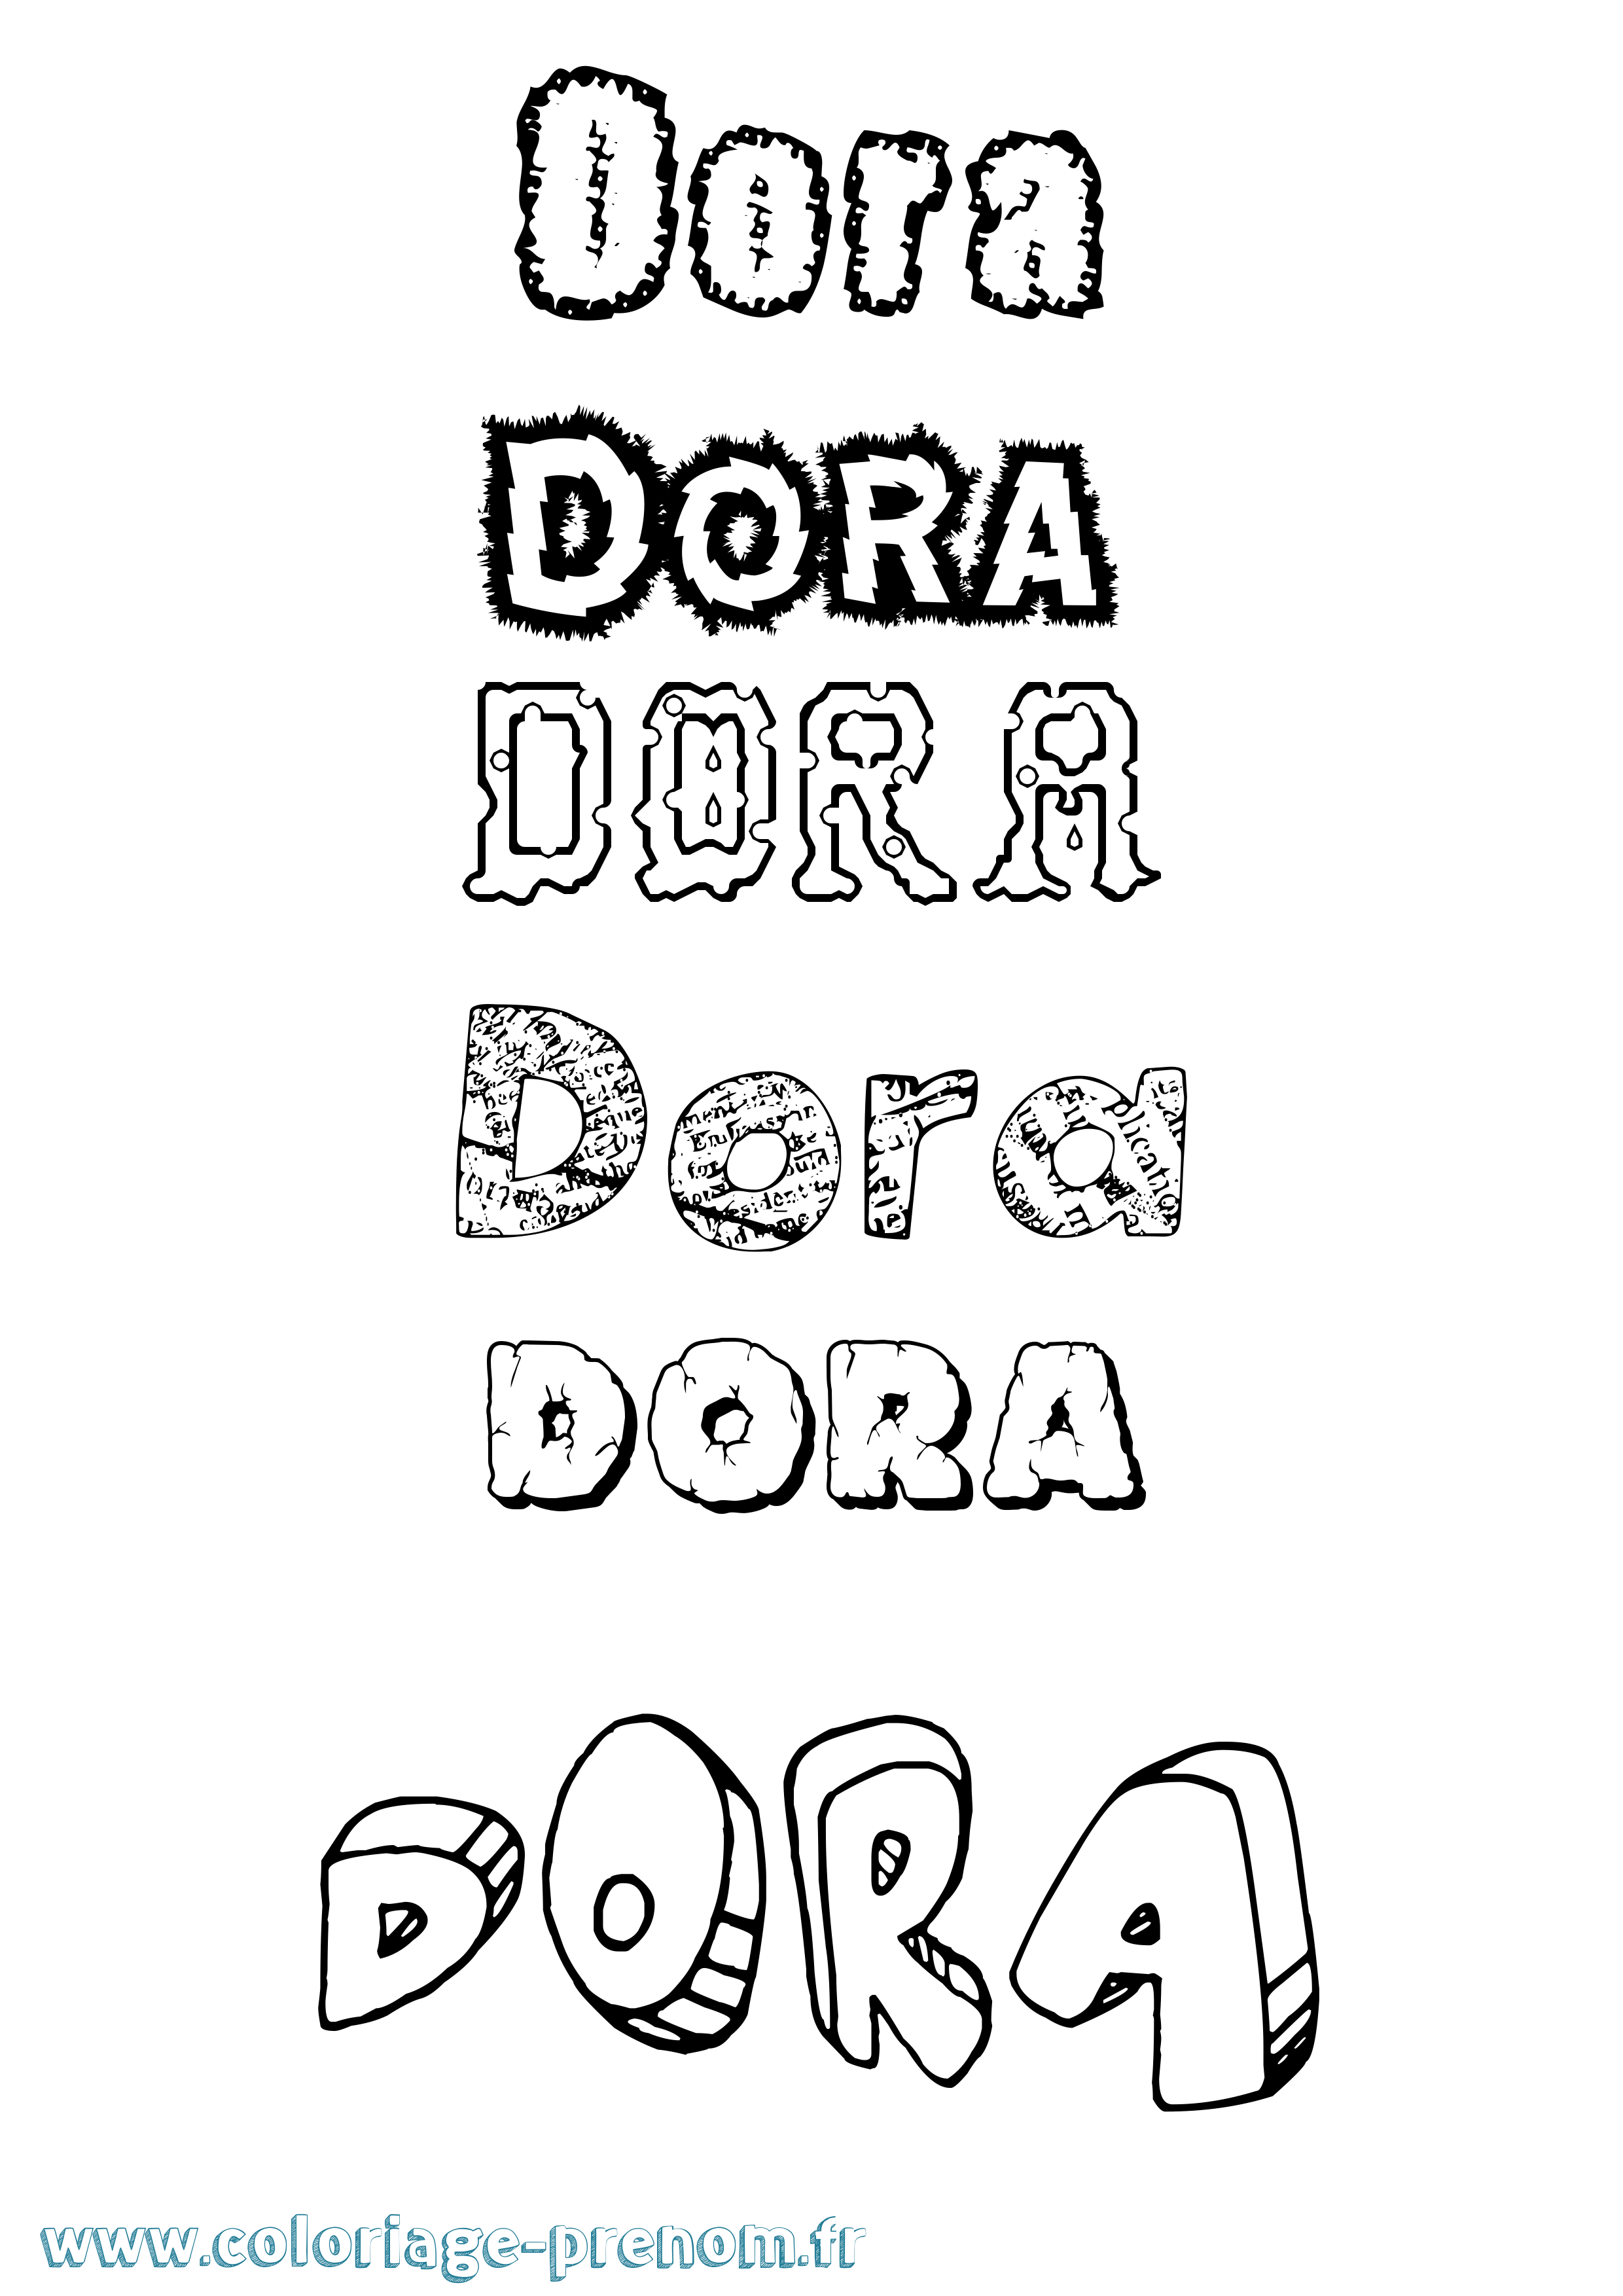 Coloriage prénom Dora